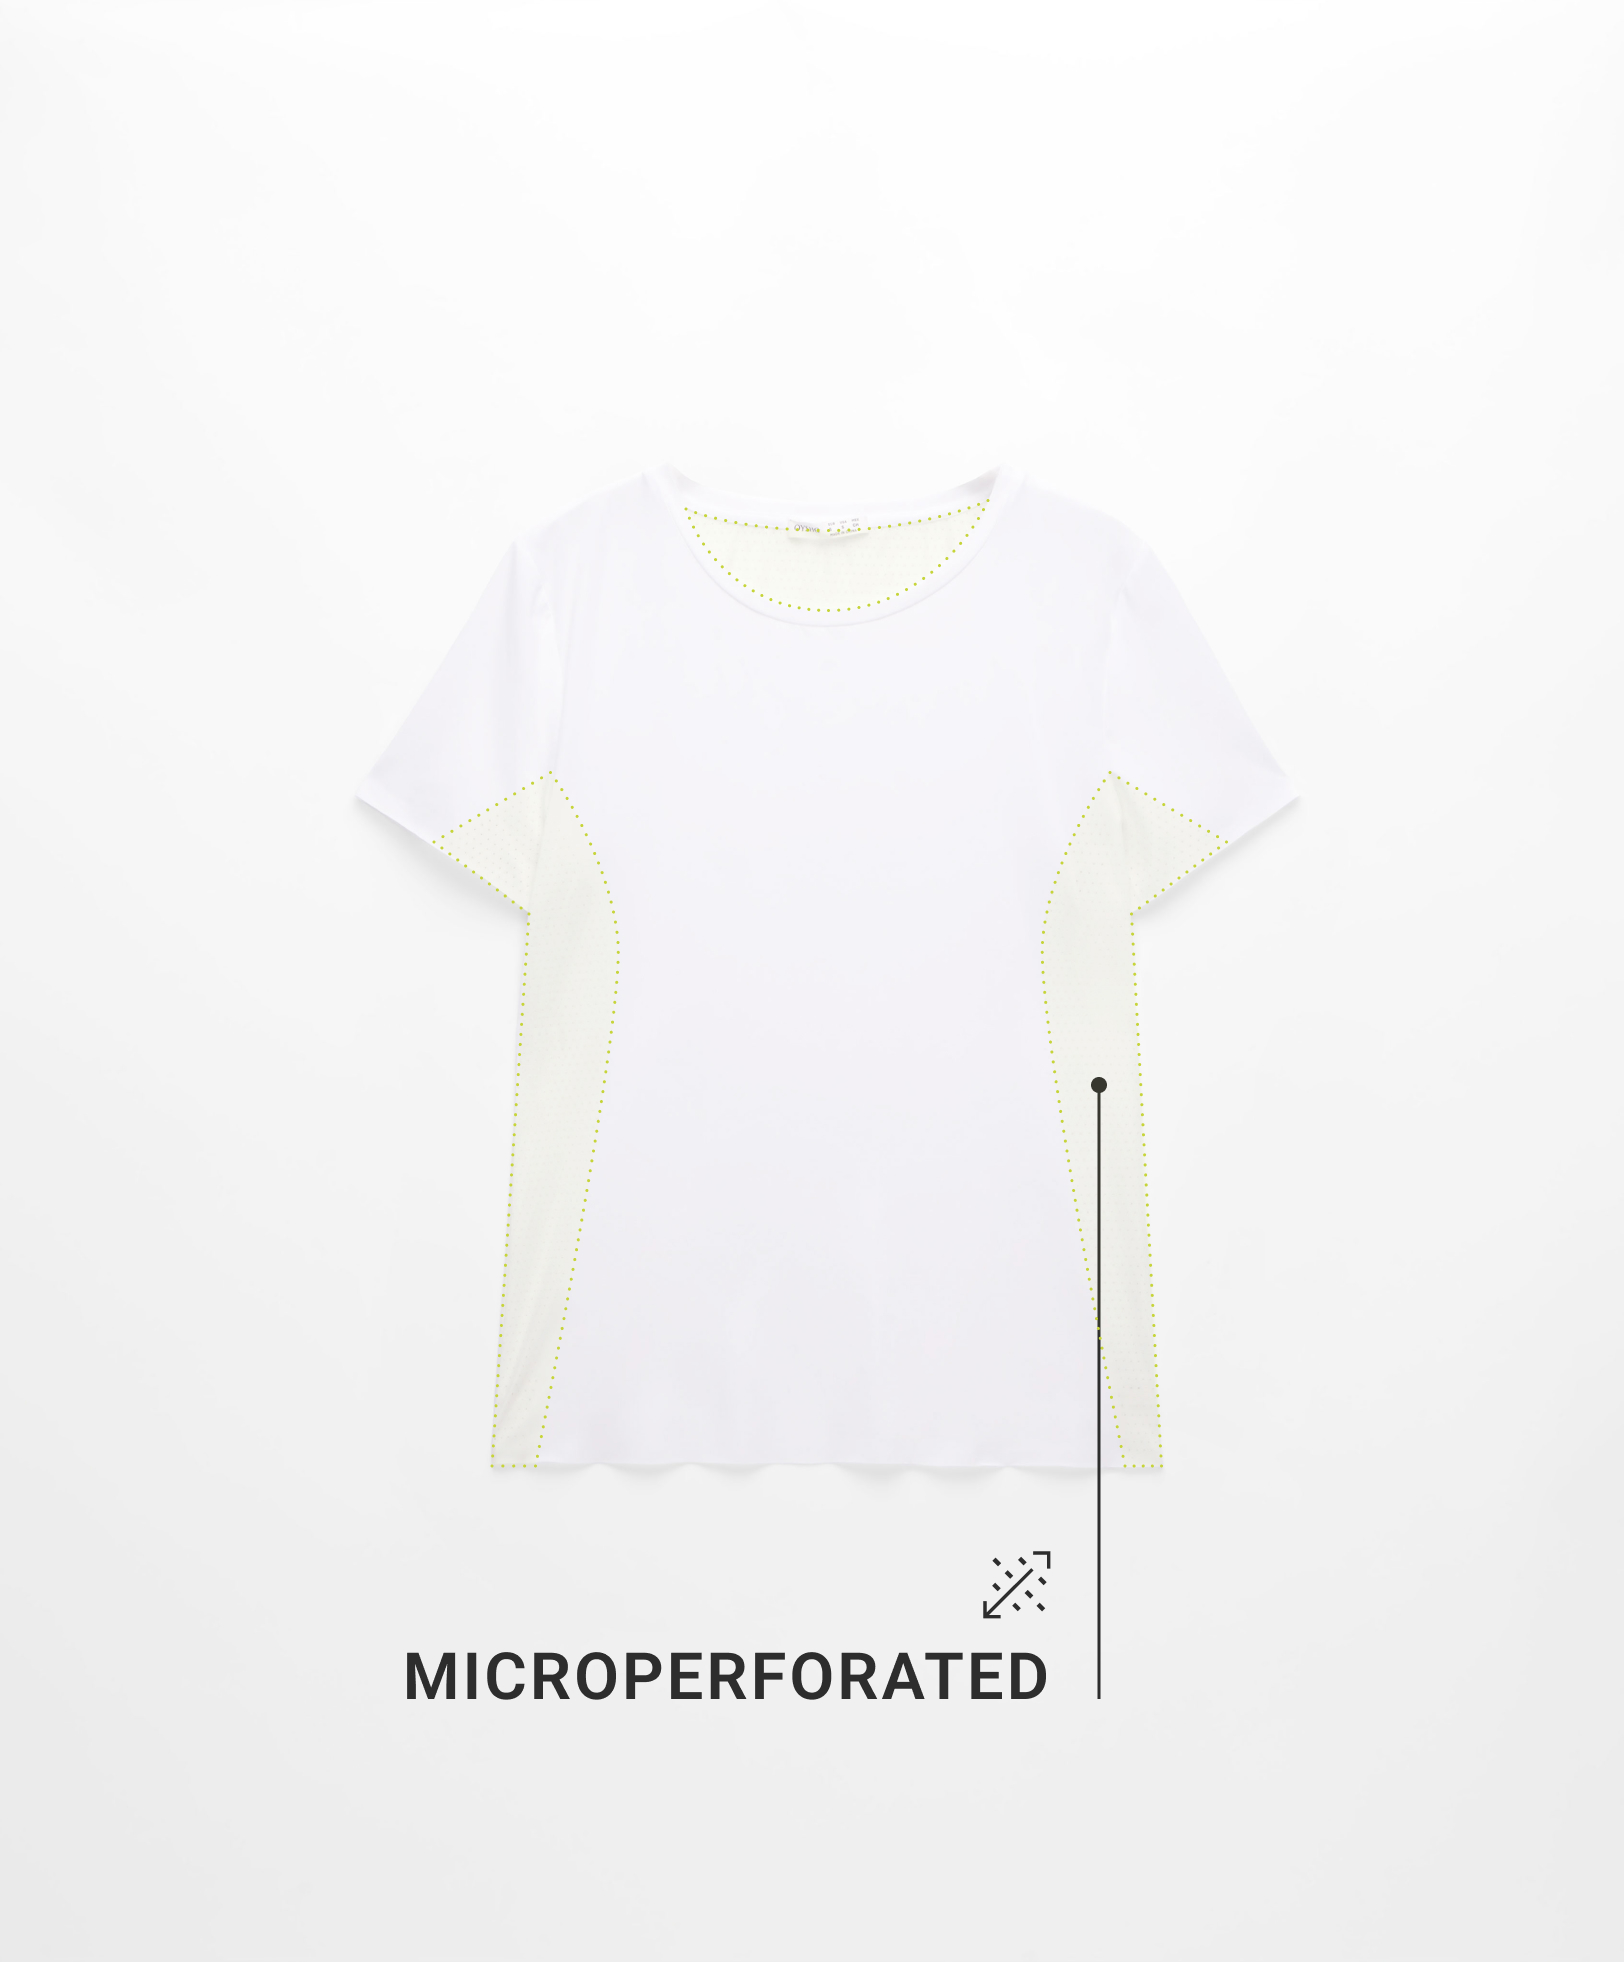 Camiseta manga corta técnica microperforada